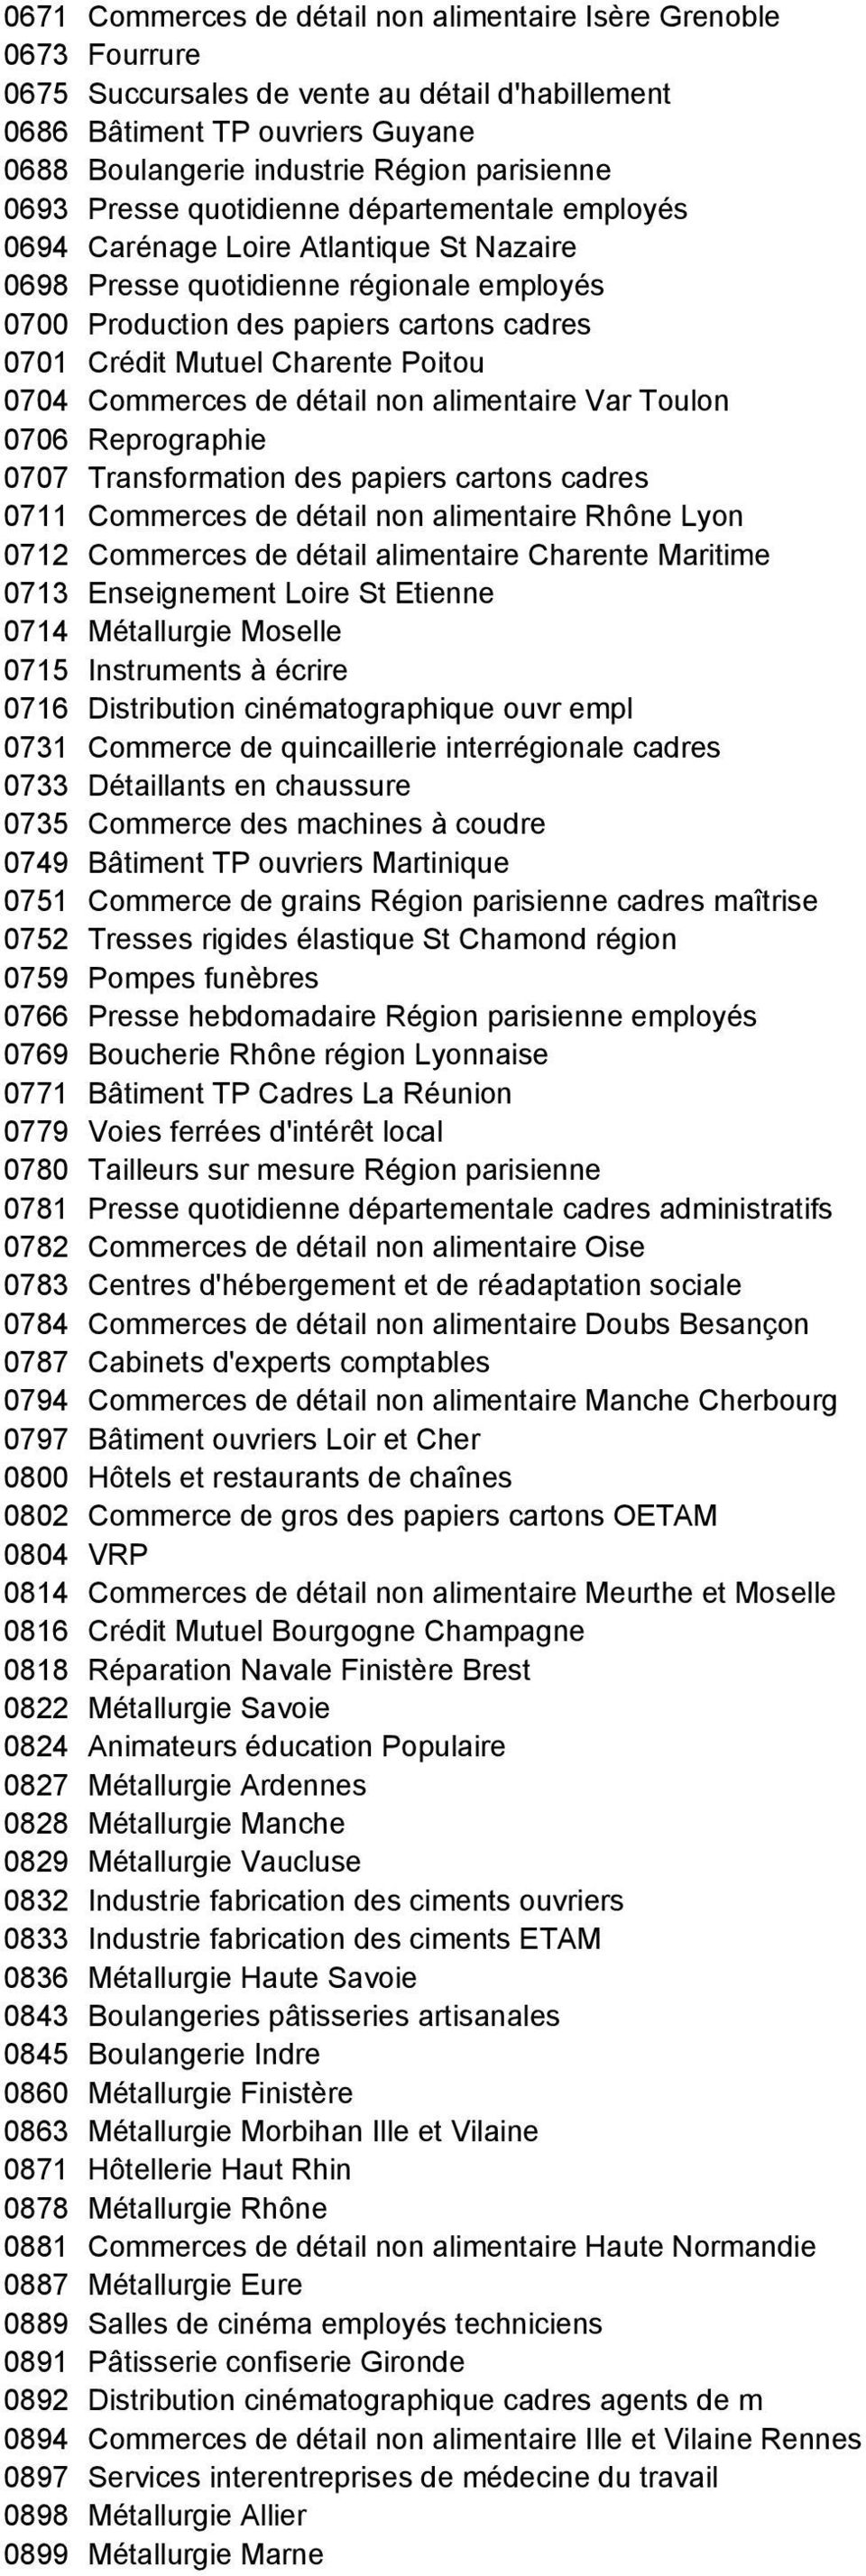 Charente Poitou 0704 Commerces de détail non alimentaire Var Toulon 0706 Reprographie 0707 Transformation des papiers cartons cadres 0711 Commerces de détail non alimentaire Rhône Lyon 0712 Commerces